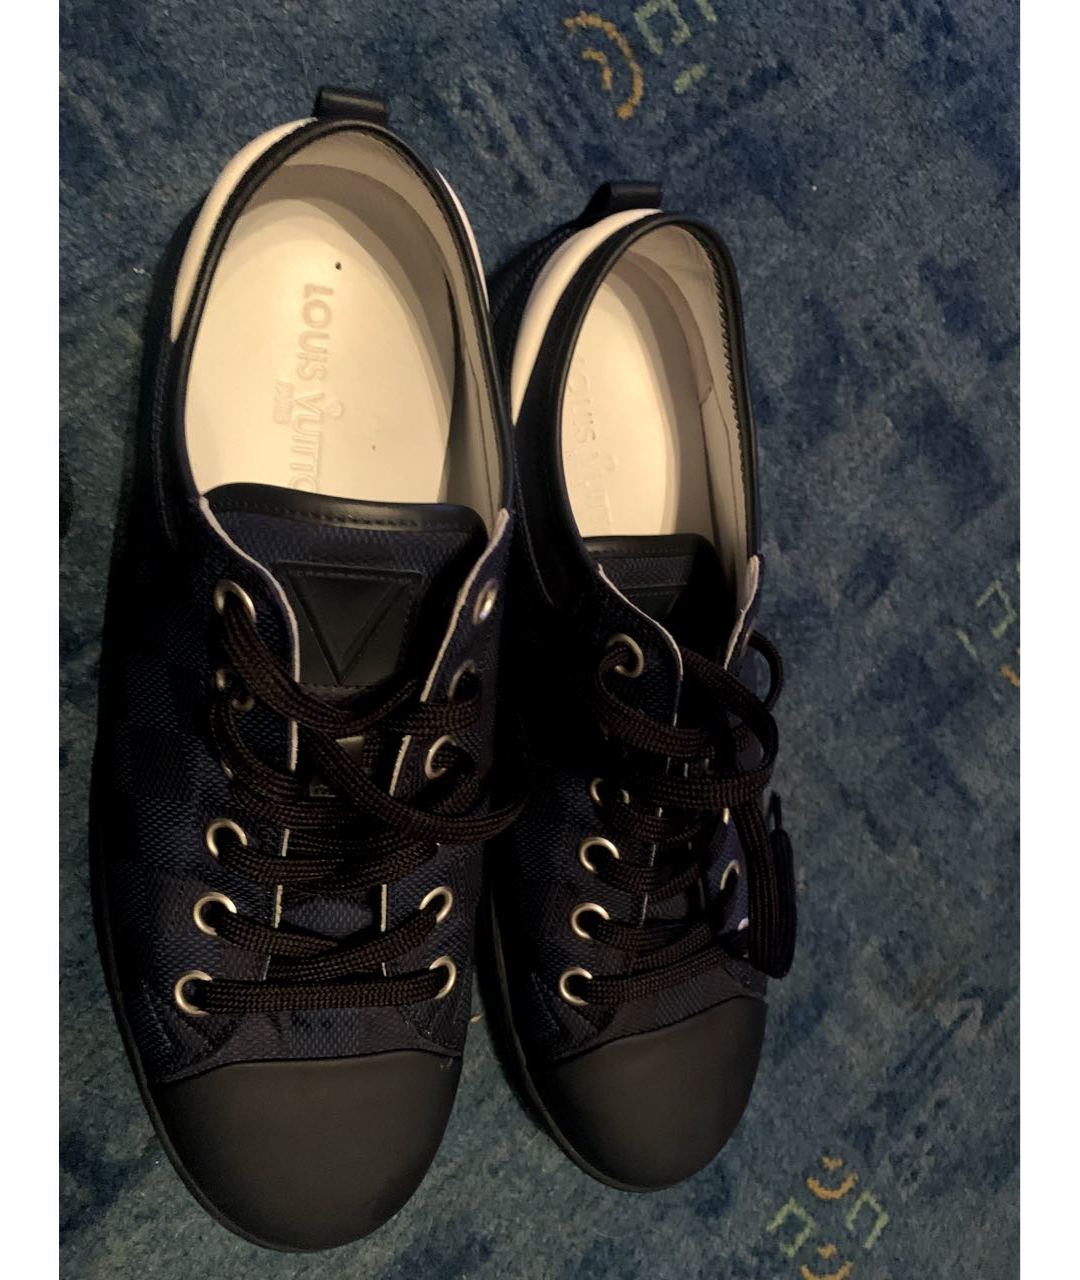 LOUIS VUITTON PRE-OWNED Темно-синие кожаные низкие кроссовки / кеды, фото 3